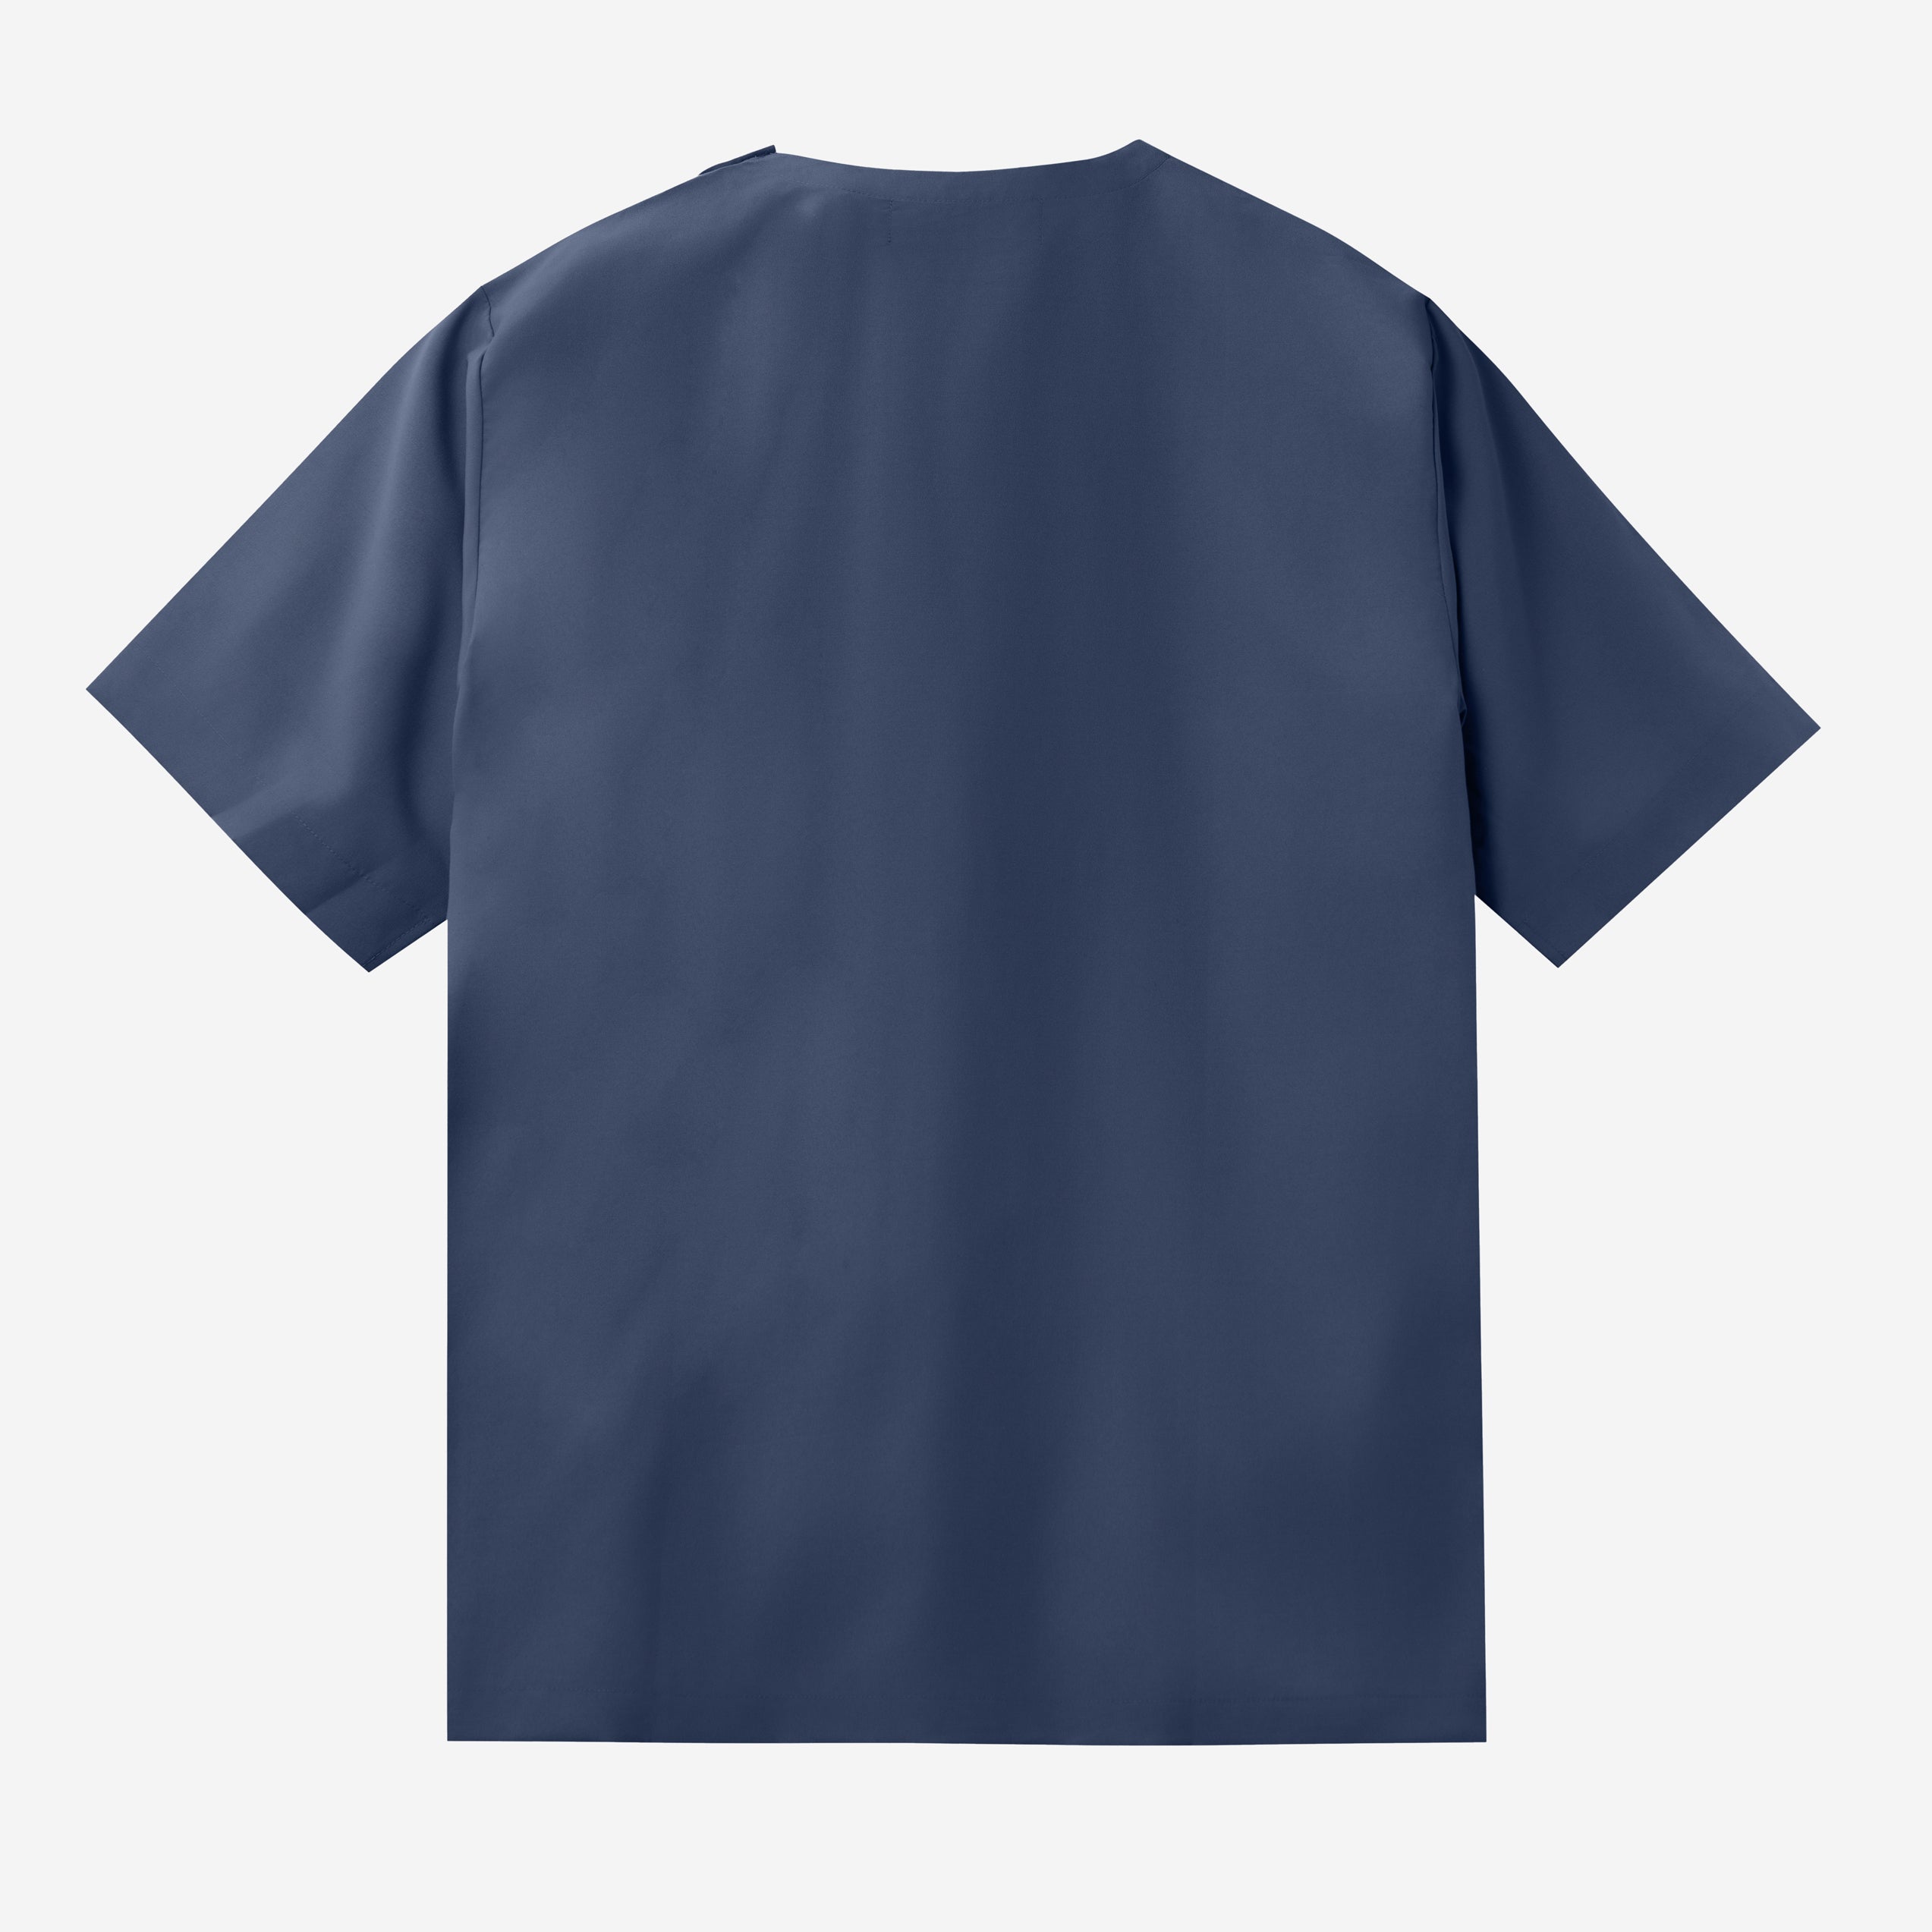 Rahab T-shirt - Navy